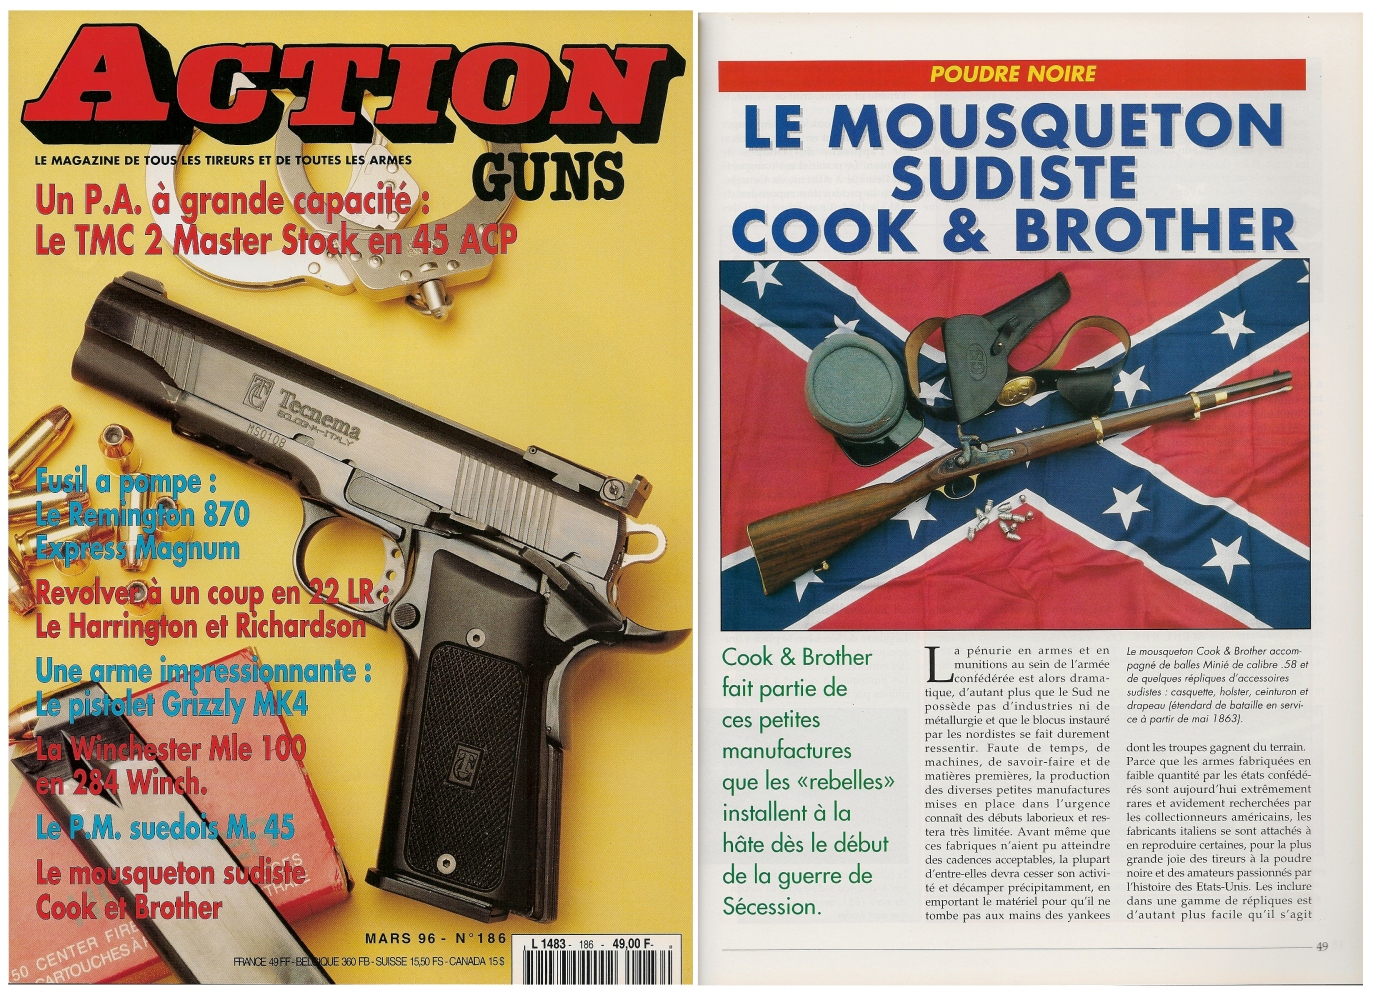 Le banc d’essai de la réplique du mousqueton Cook & Brother a été publié sur 5 pages dans le magazine Action Guns n° 186 (mars 1996).